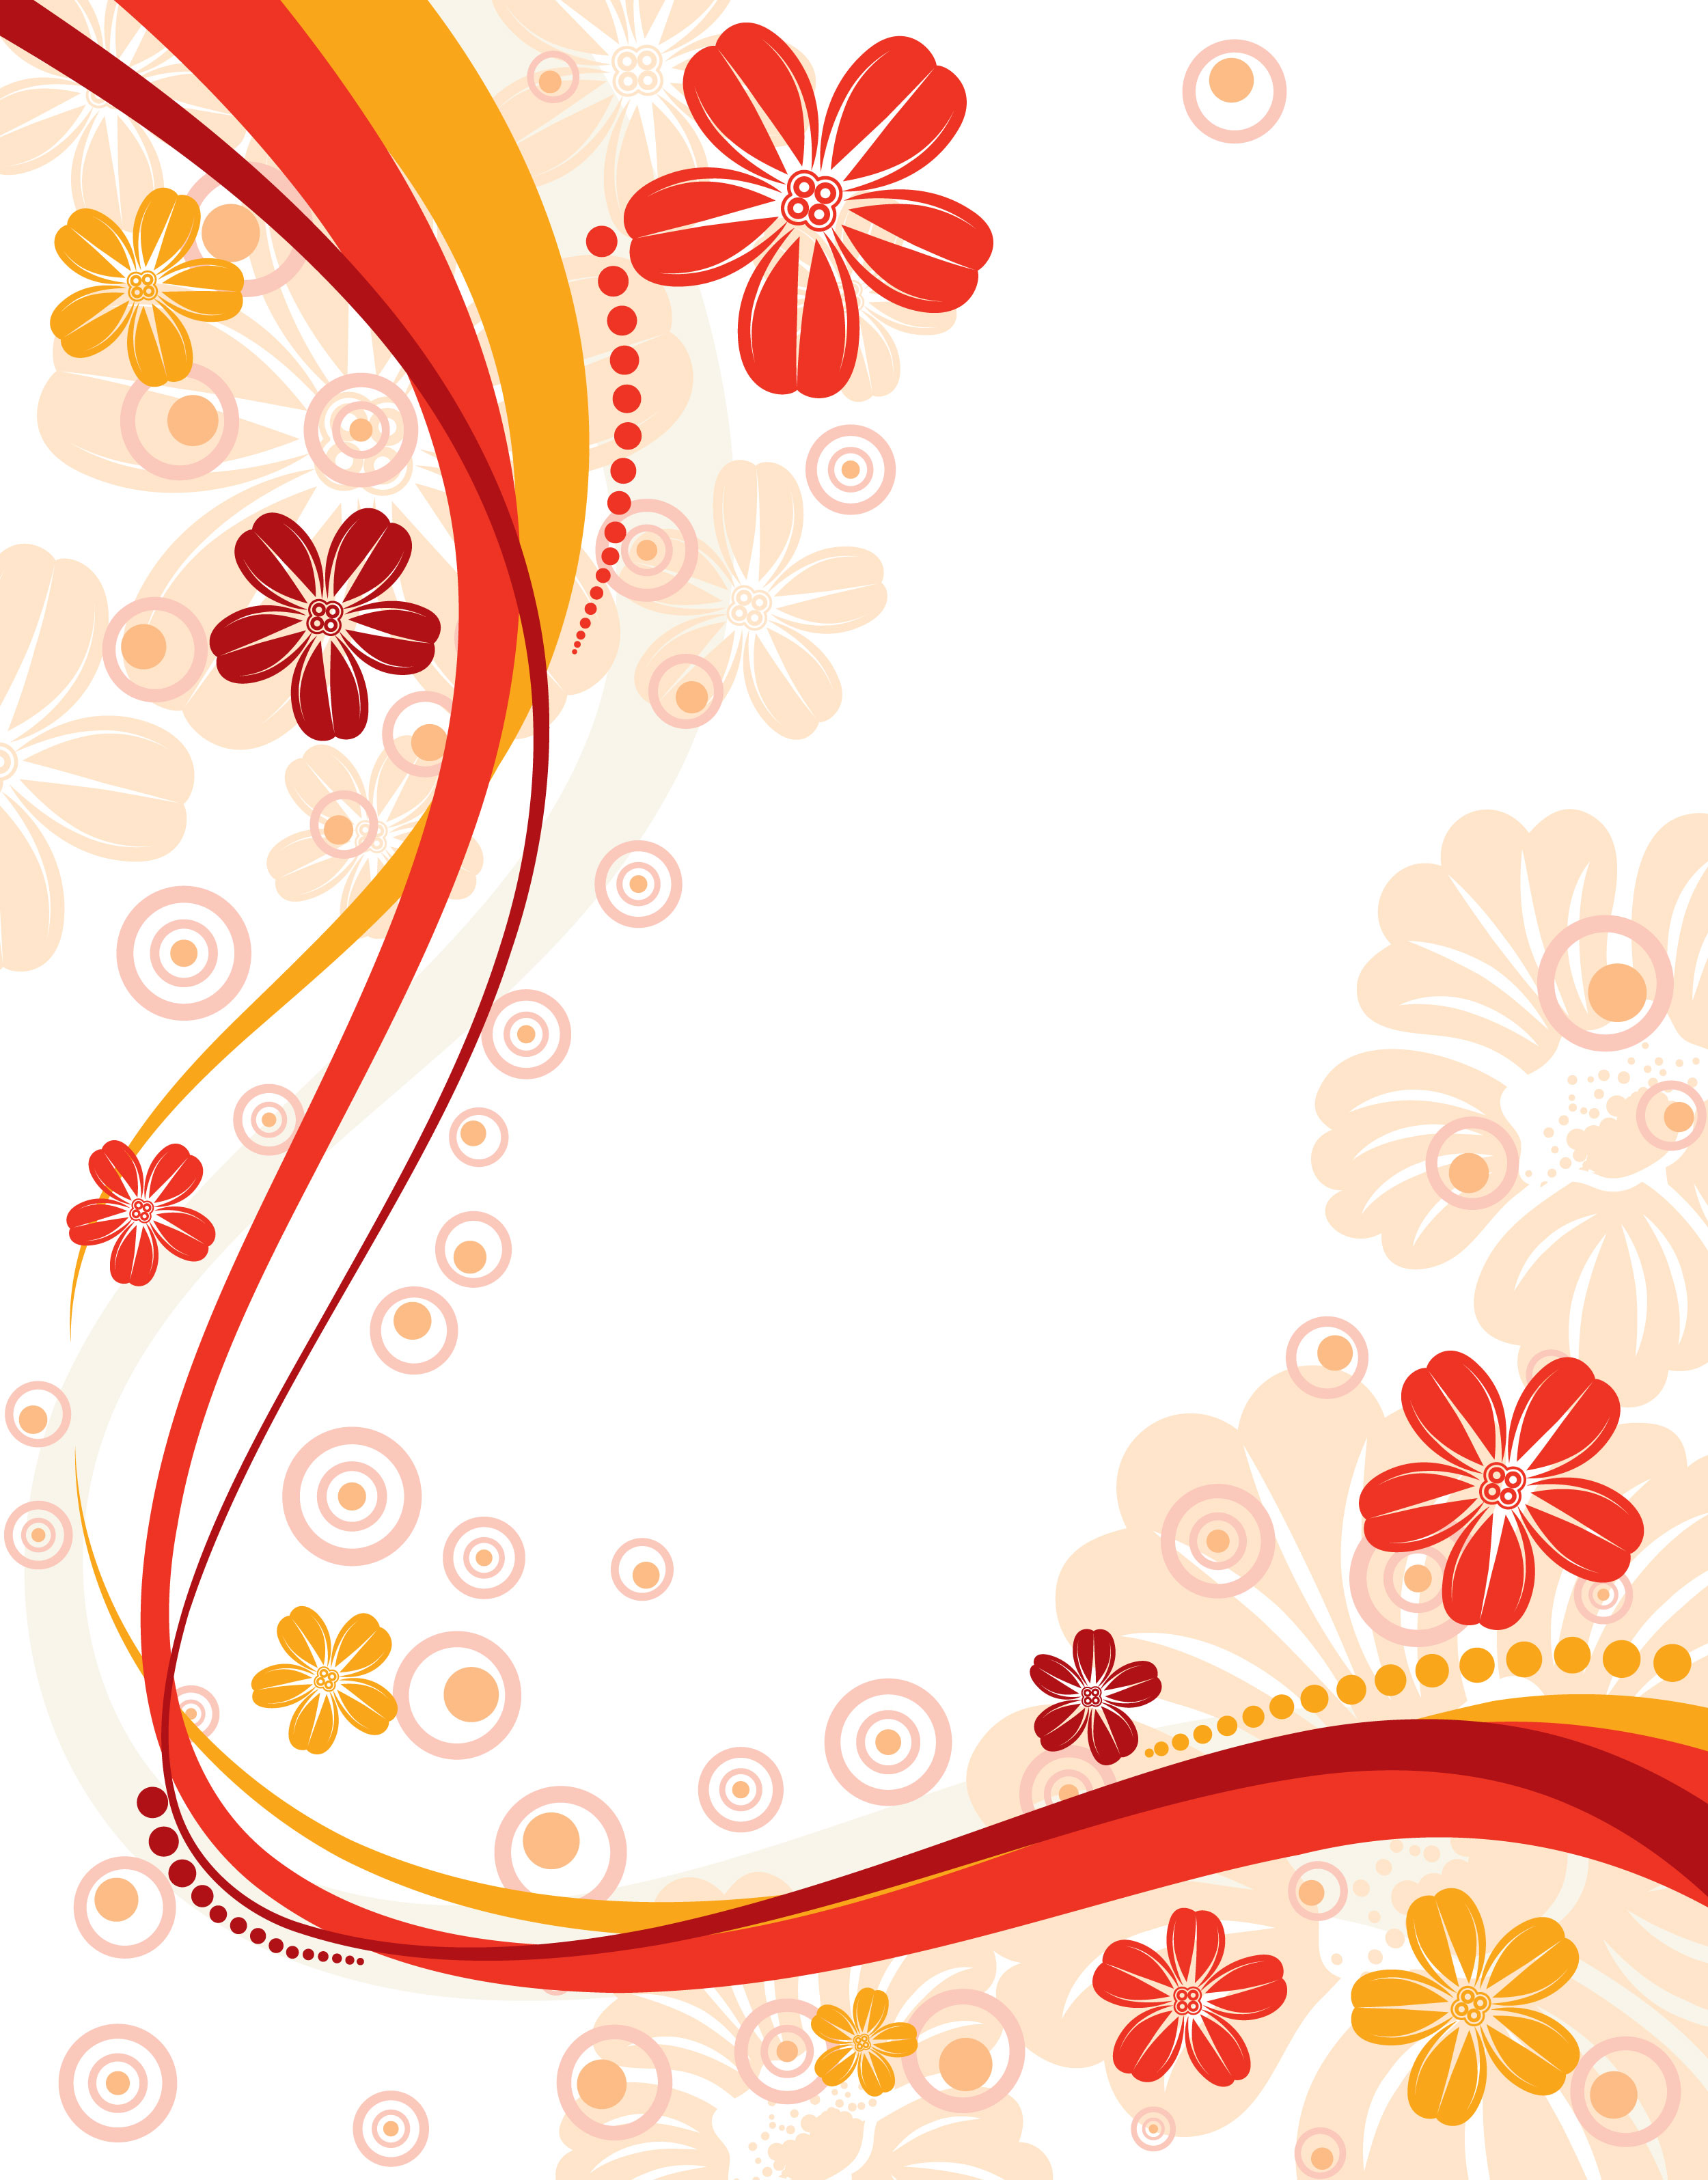 花のイラスト フリー素材 壁紙 背景no 701 赤黄茶 曲線ライン